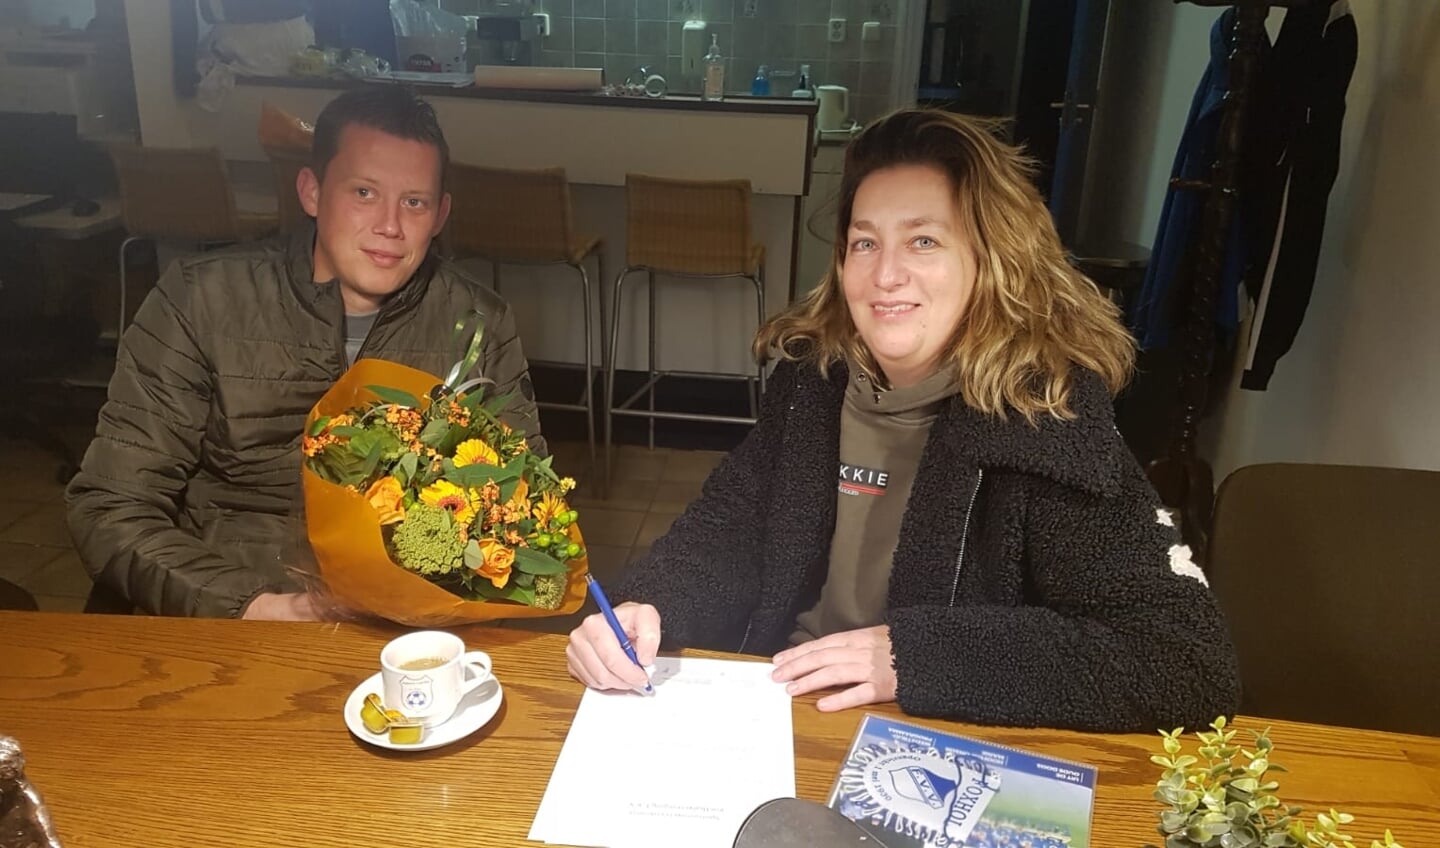 Patrick Santing van FVV en Nicole Overzee van Budgetbeheer Eemsdelta ondertekenen de sponsorovereenkomst.